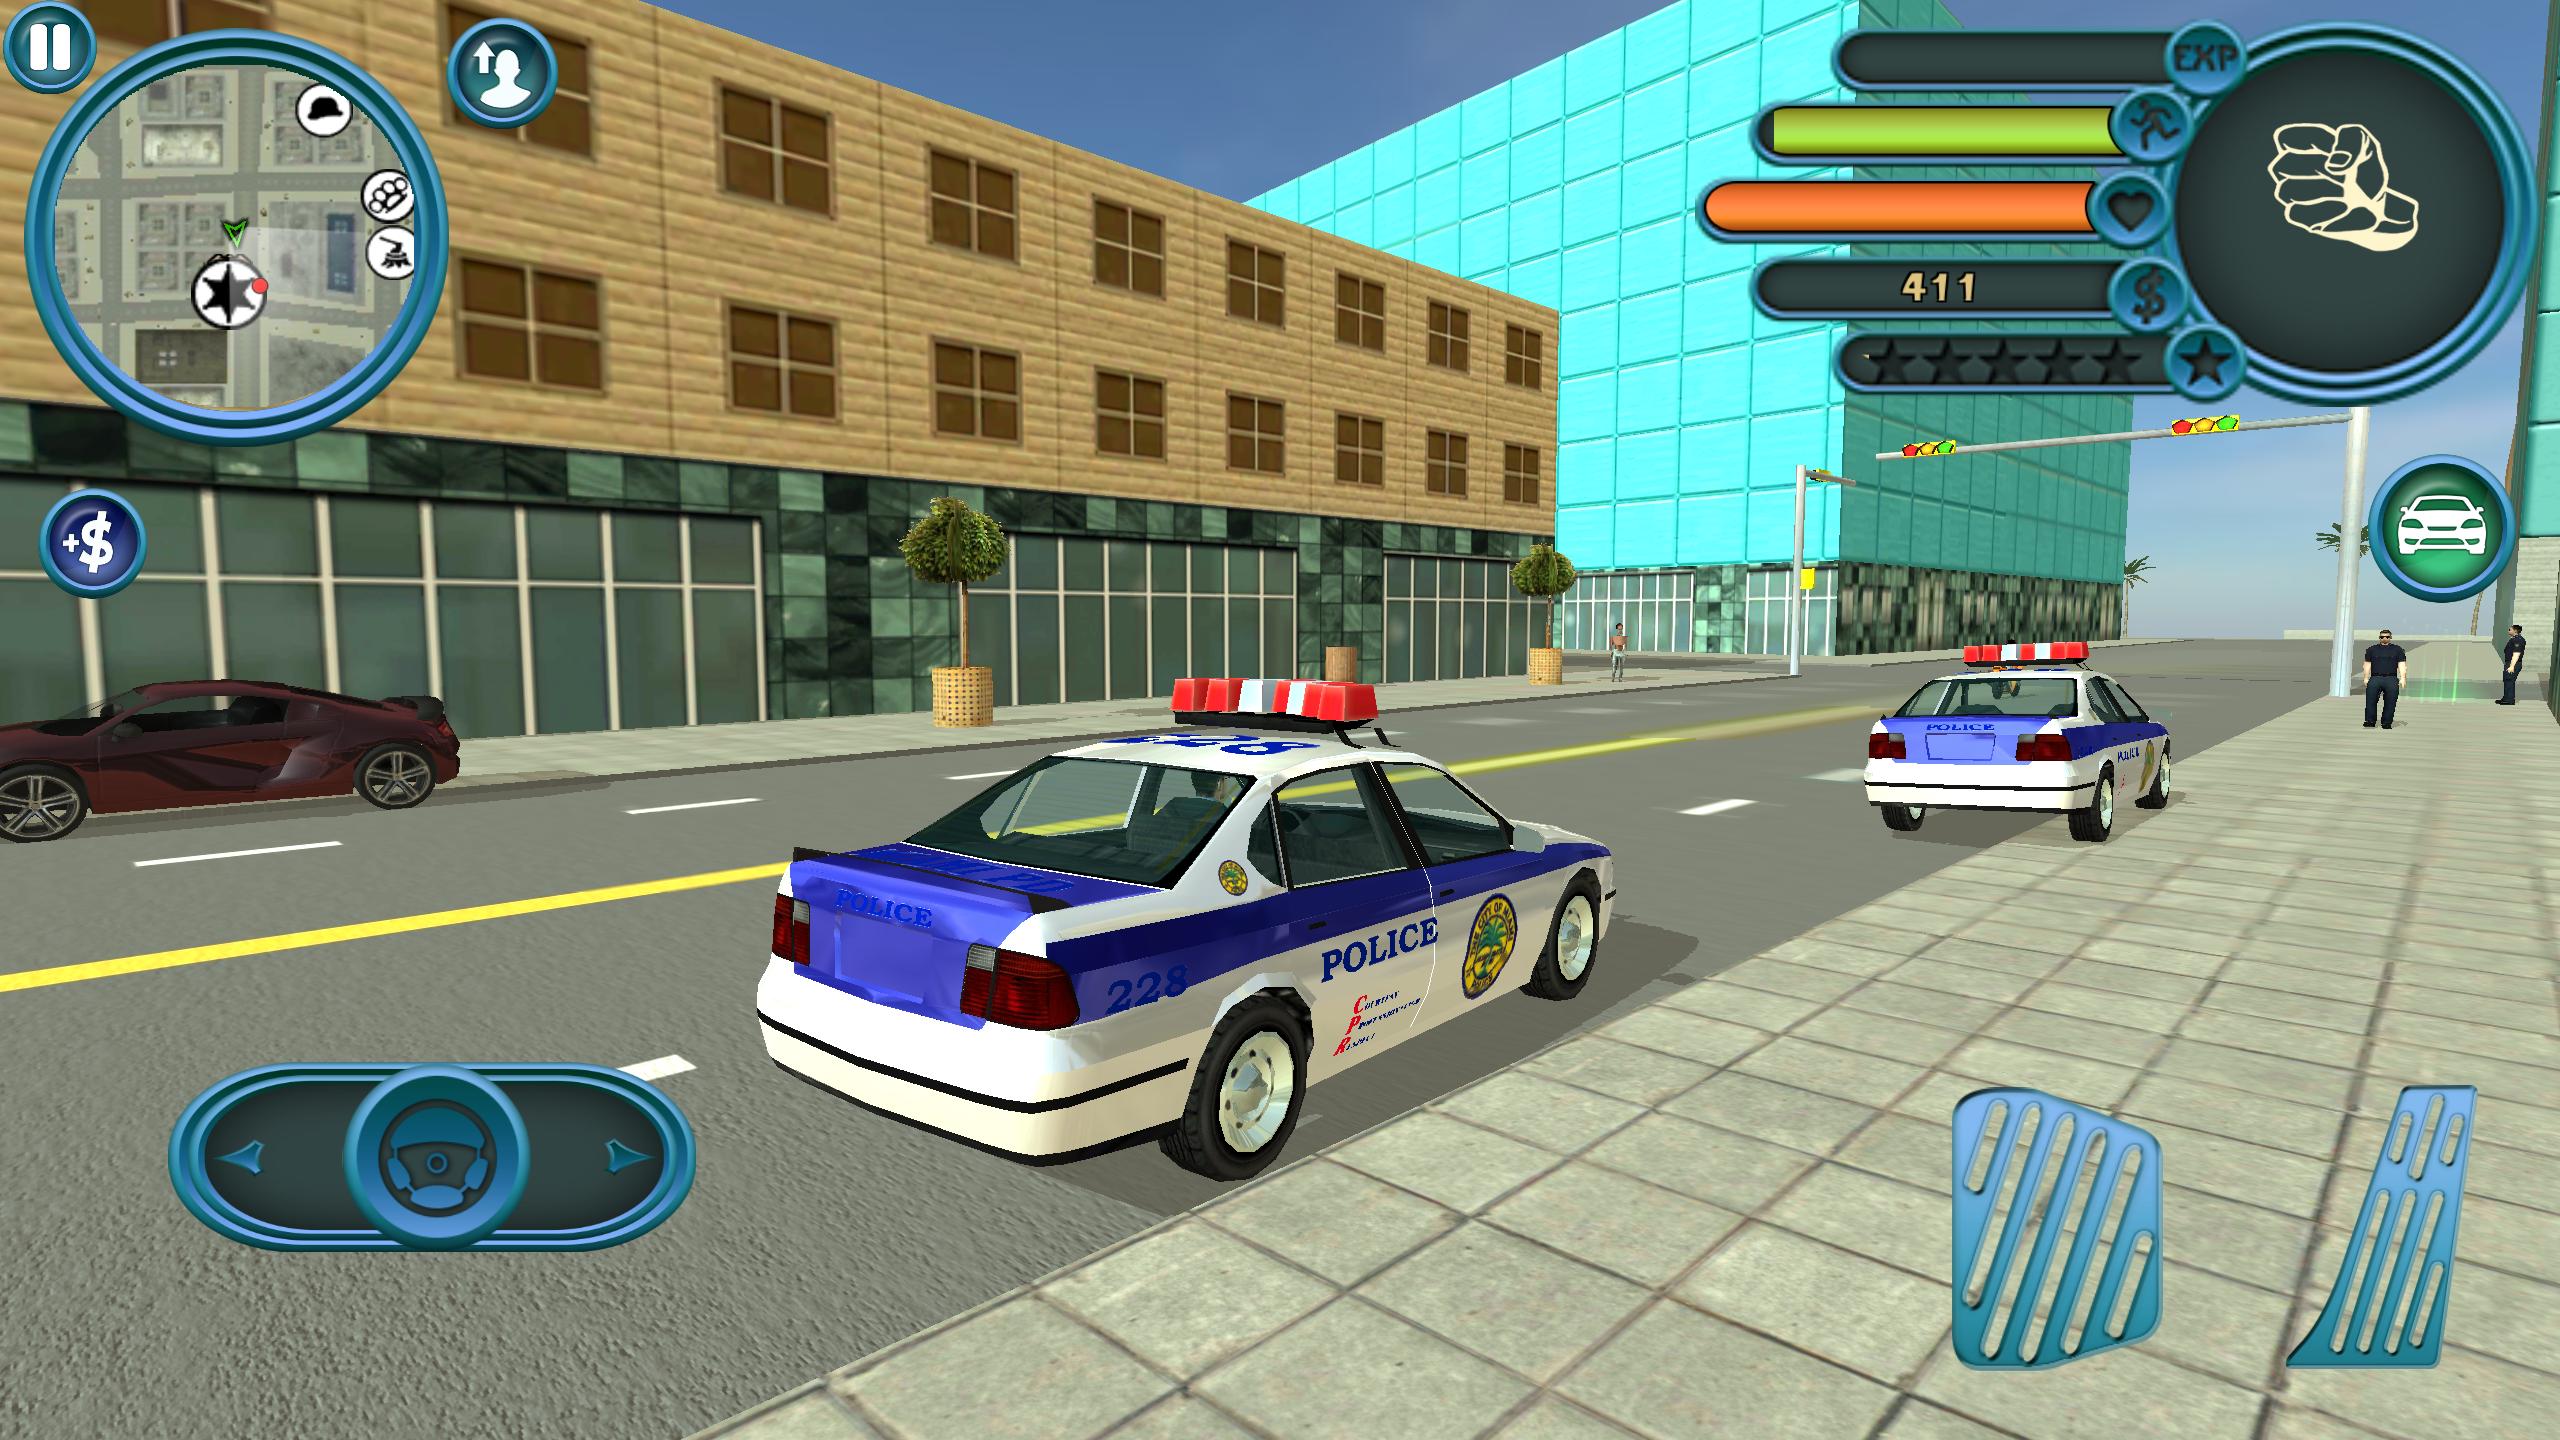 Игра полицейские взломка. Miami Police игра. Игра City Police car. Полиция Майами игра на андроид. Симулятор полицейского участка.